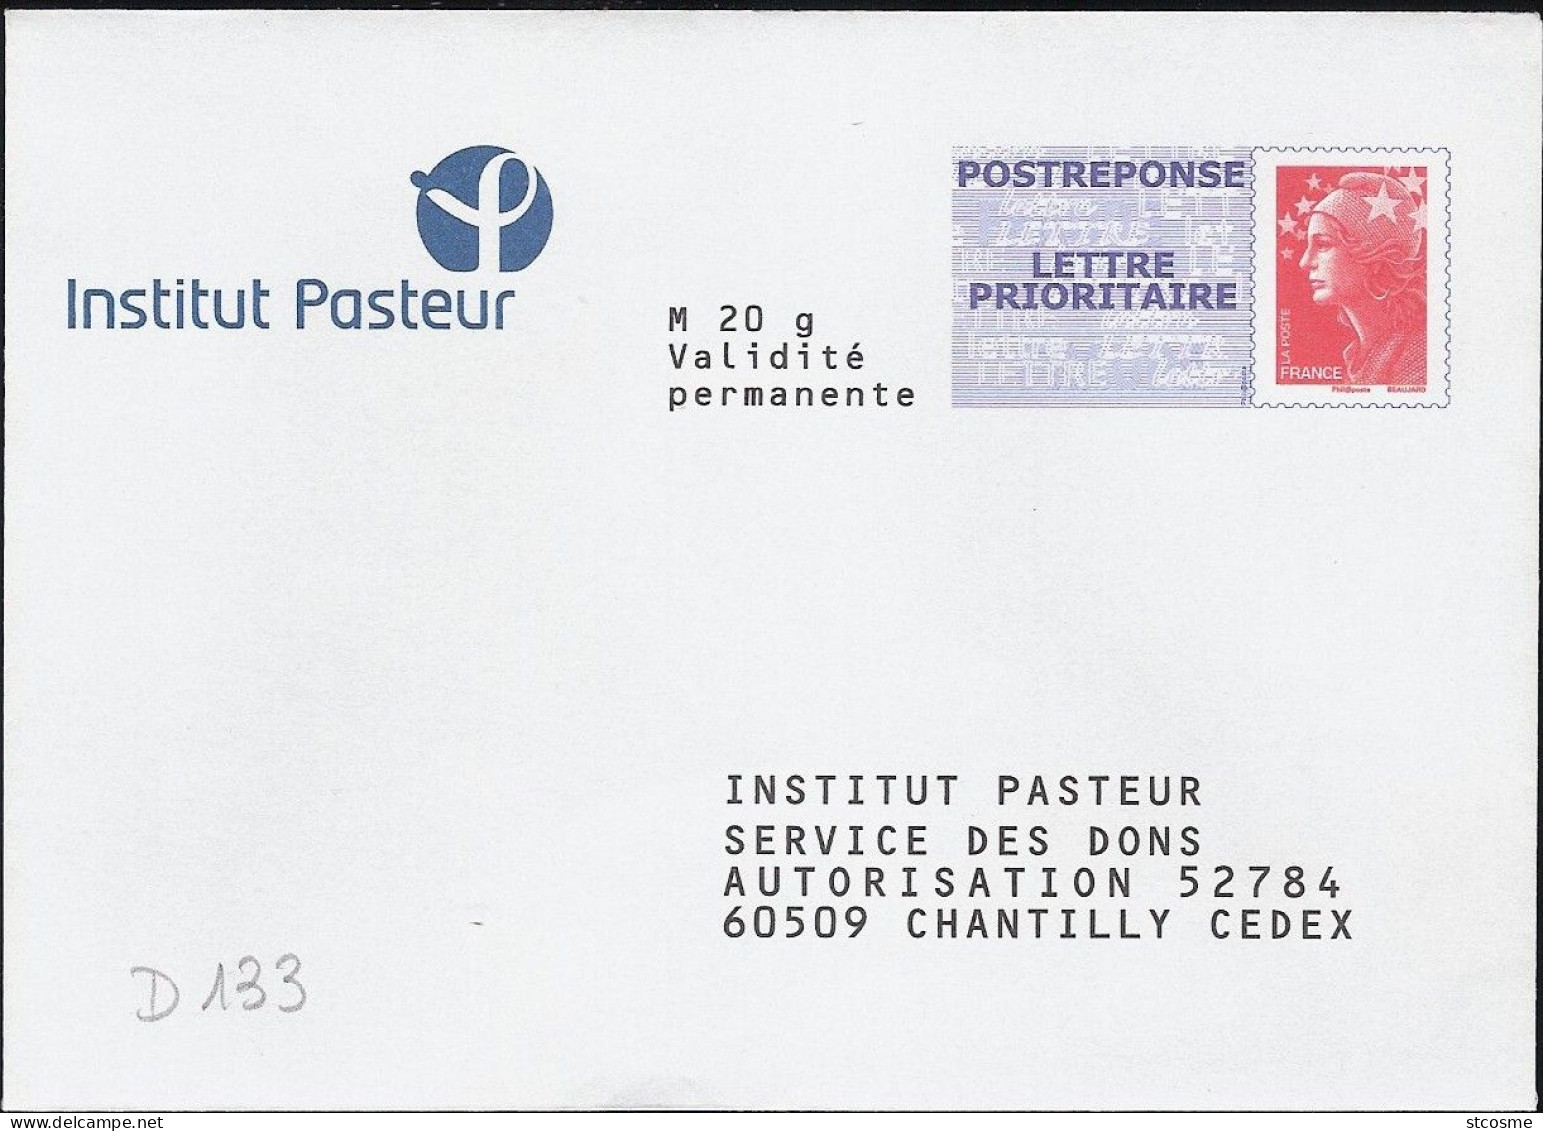 D0133-B - Entier / Stationery / PSE - PAP Réponse Beaujard - Institut Pasteur - Agrément 10P497 - Prêts-à-poster:Answer/Beaujard